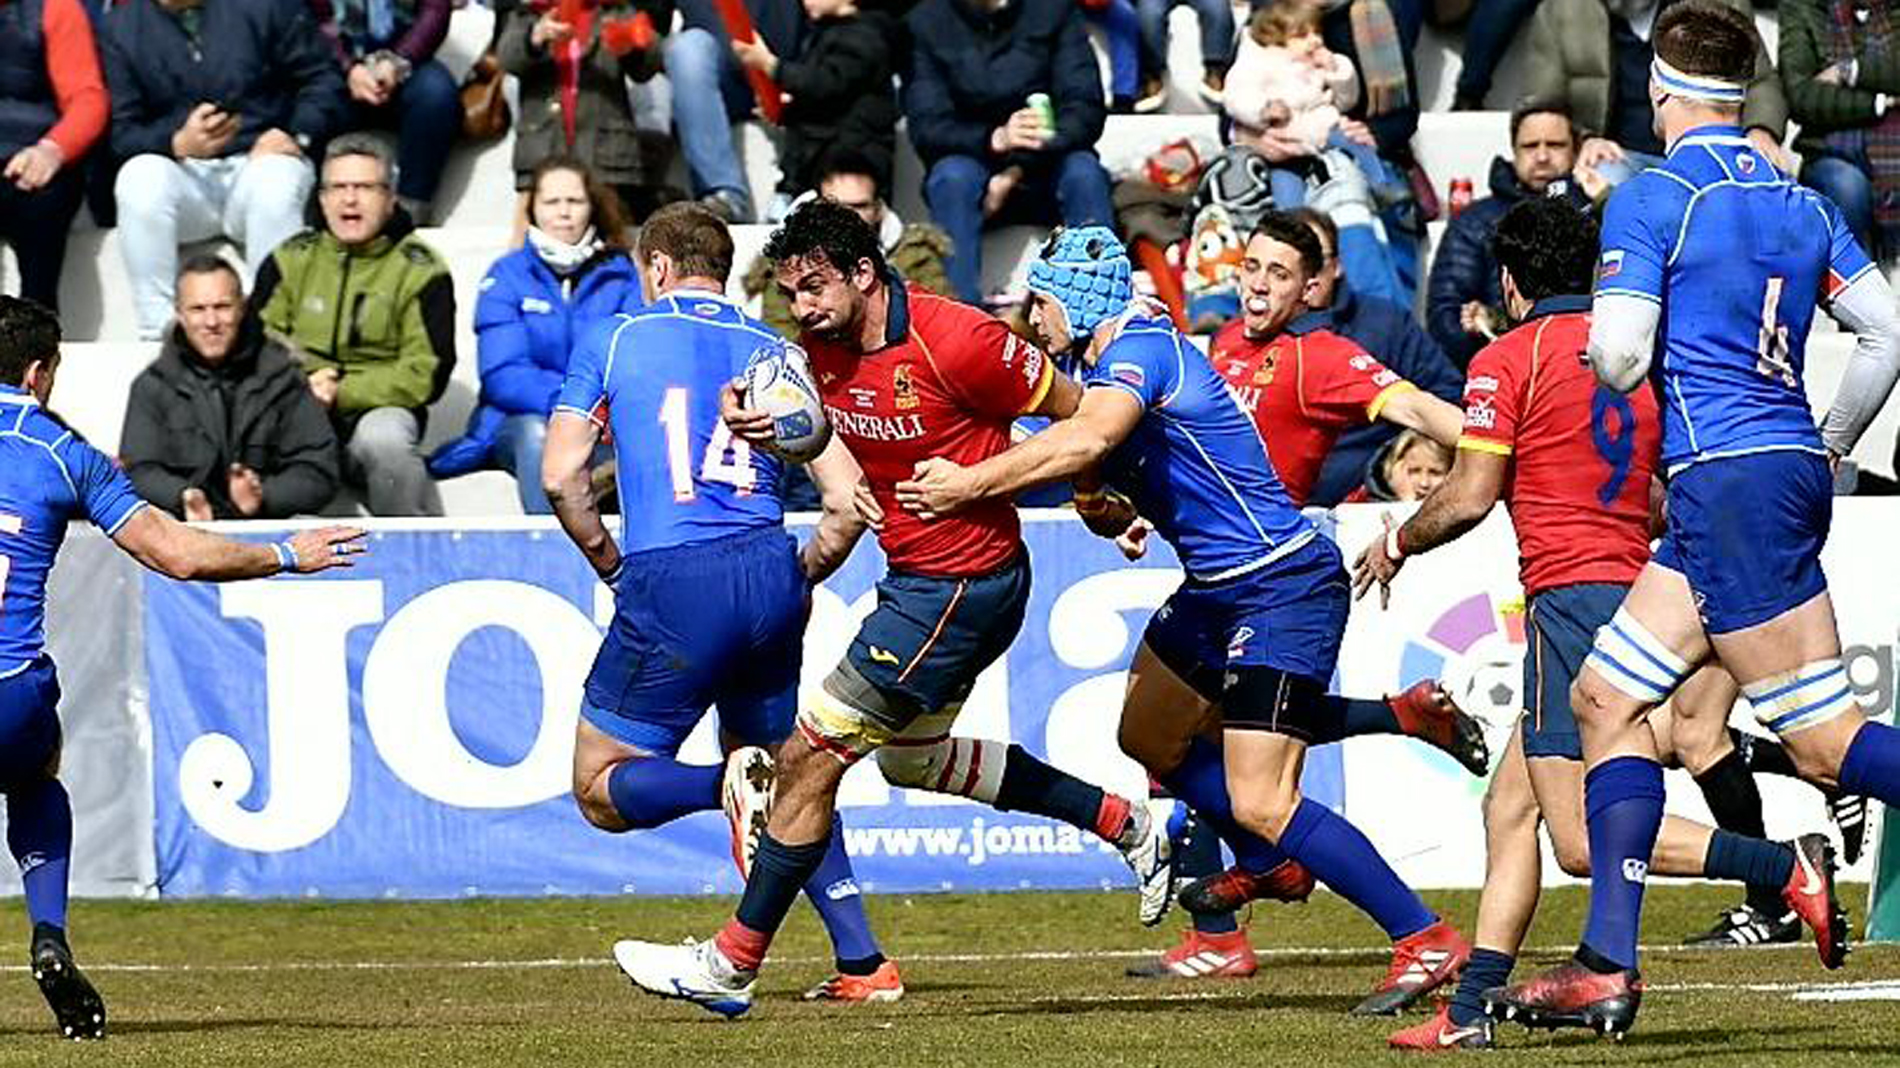 Ciencias Sociales negro grado España remonta a Rusia y gana 16-14 el primer partido del Europeo de Rugby